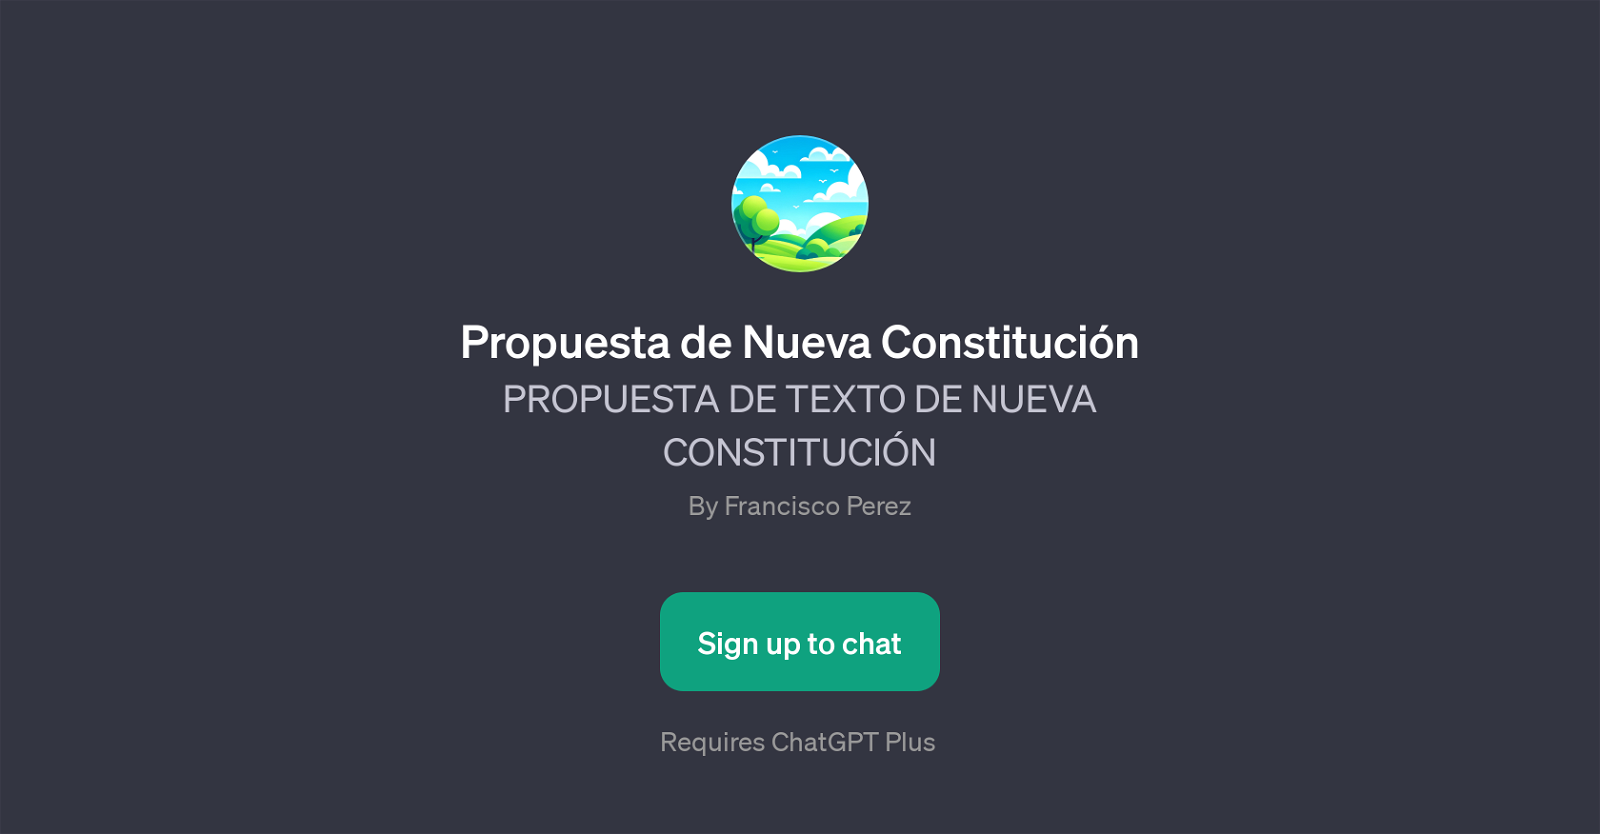 Propuesta de Nueva Constitucin website